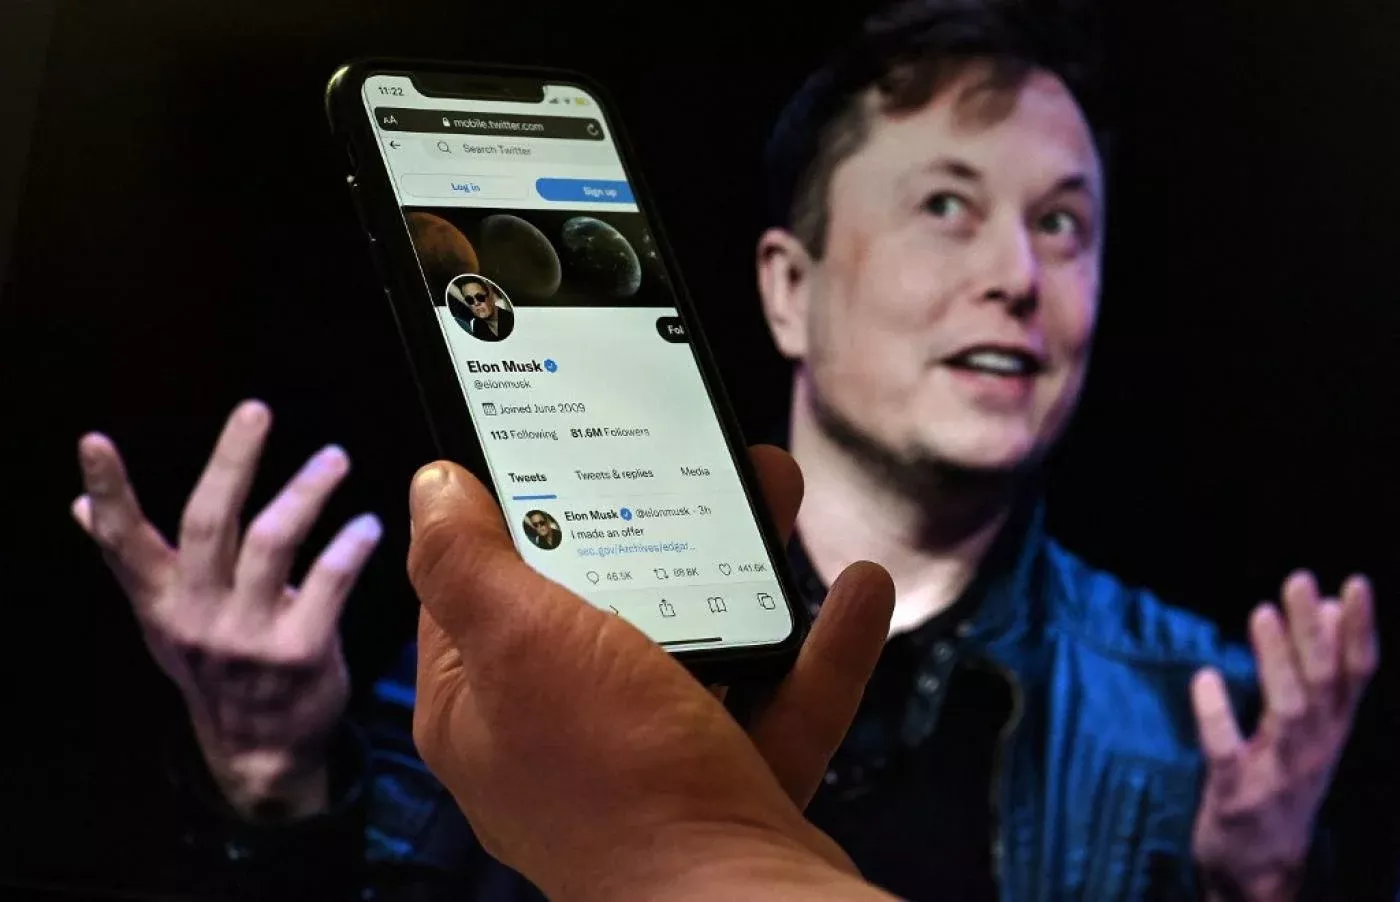 Un écran de téléphone affiche le compte Twitter d’Elon Musk tandis qu’une photo de lui est visible en arrière-plan, le 14 avril 2022 à Washington (AFP)